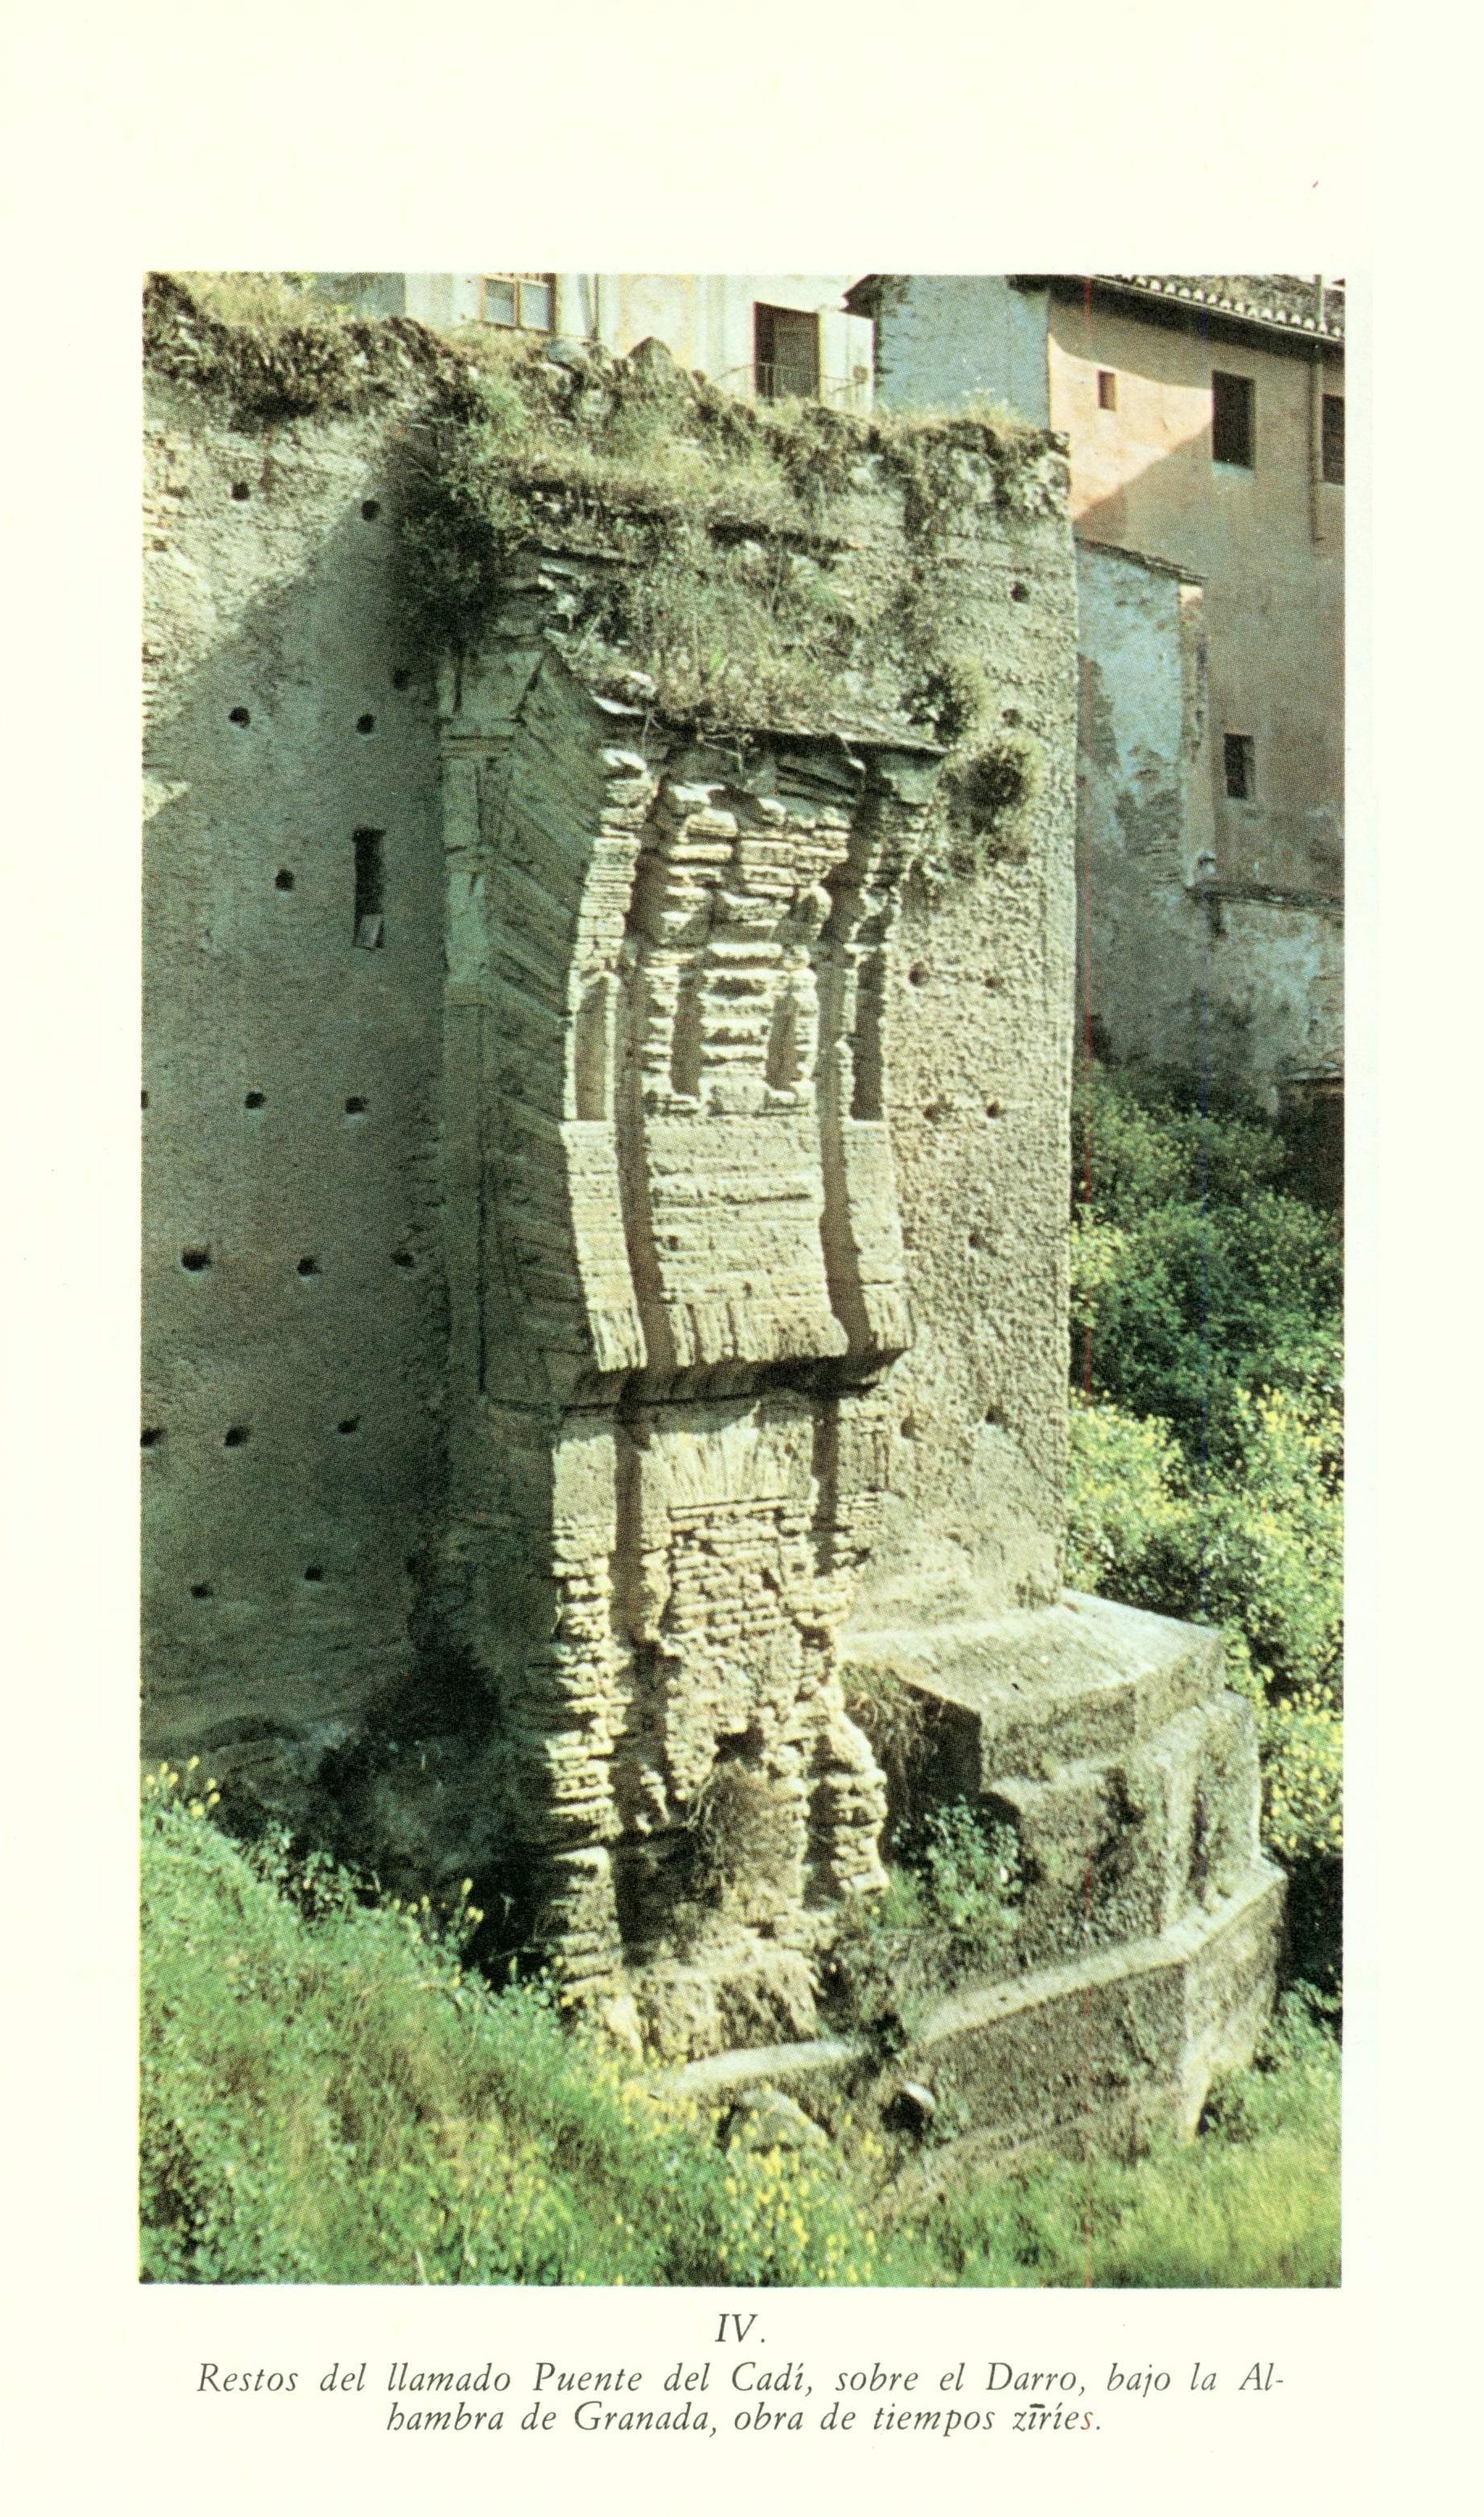 El Siglo XI Contado en 1 persona Las Memorias de Abd Allah último rey Ziri de Granada destronado por los Almorávides - photo 11